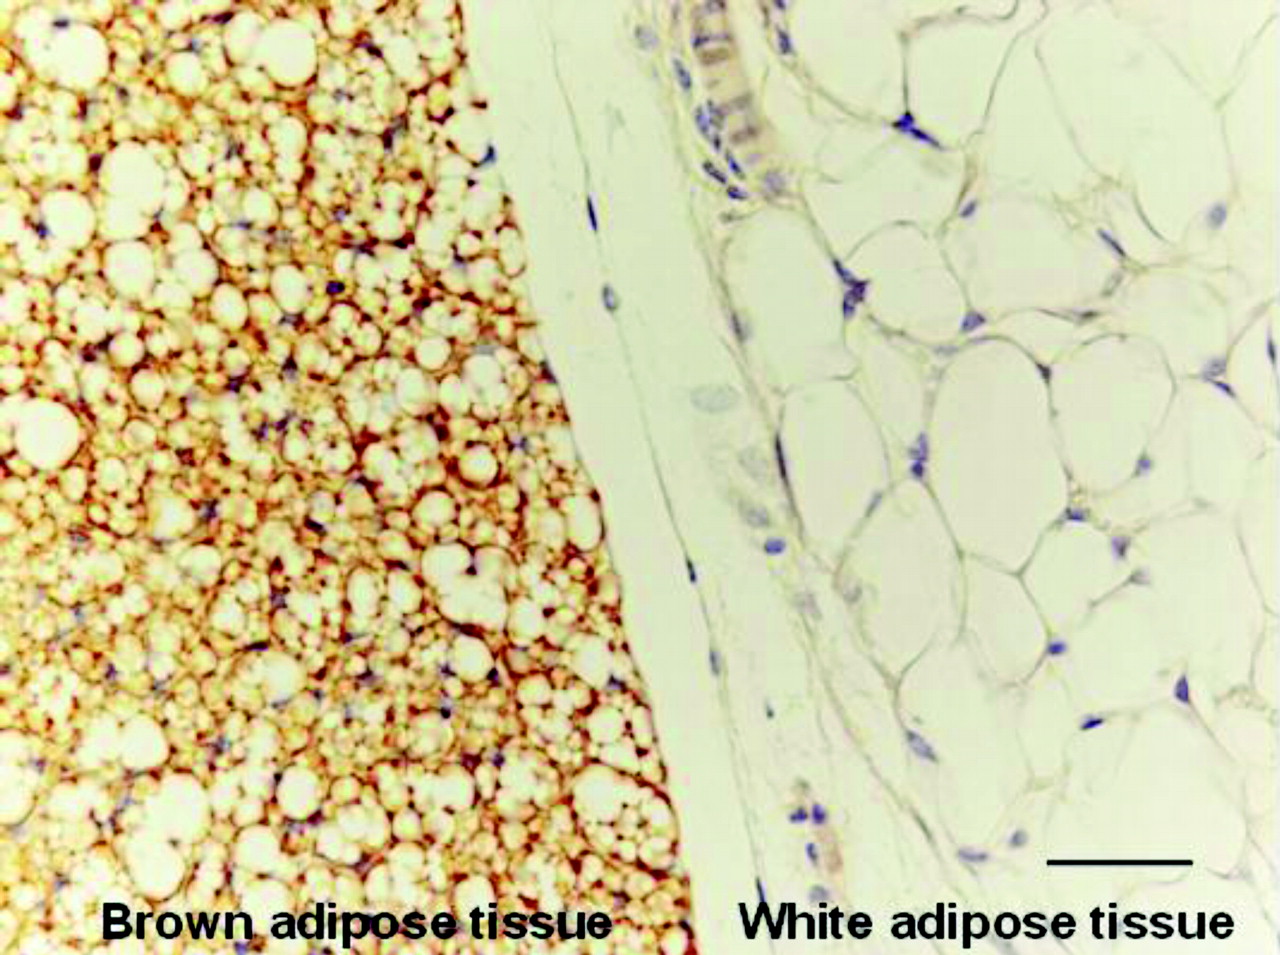 Brown Adipose Tissue vs White Adipose Tissue